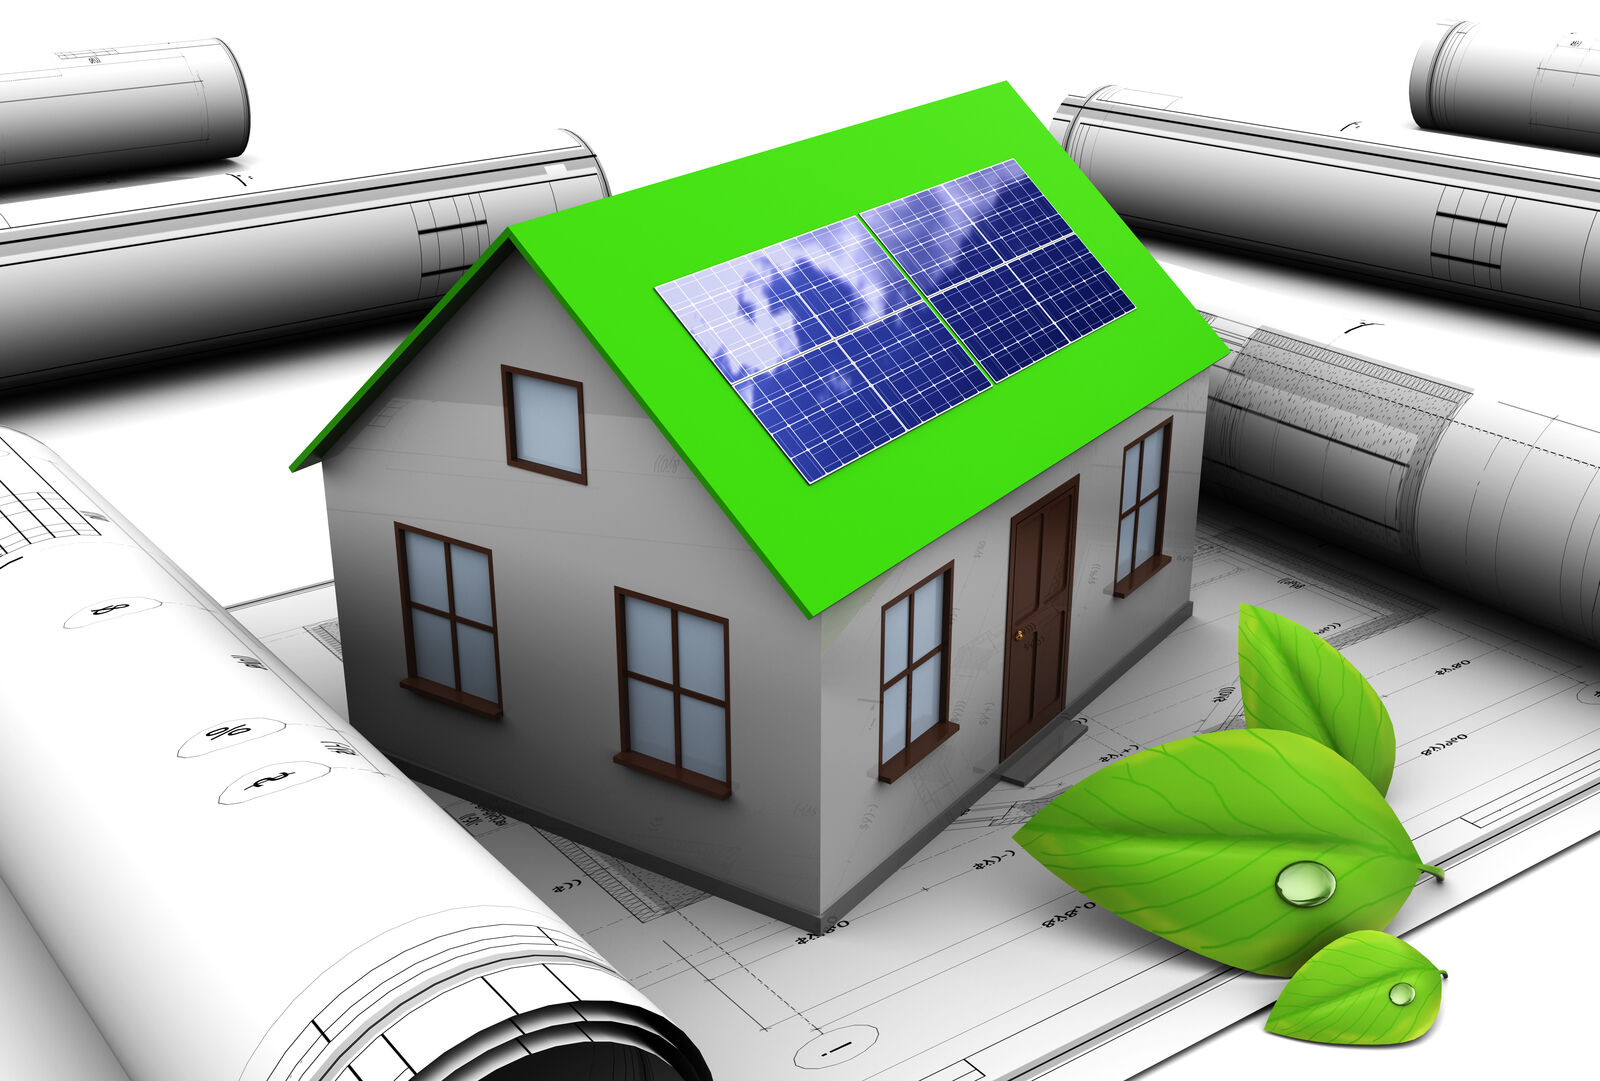 Hausmodell mit einem grünen Dach und Solarpanels darauf